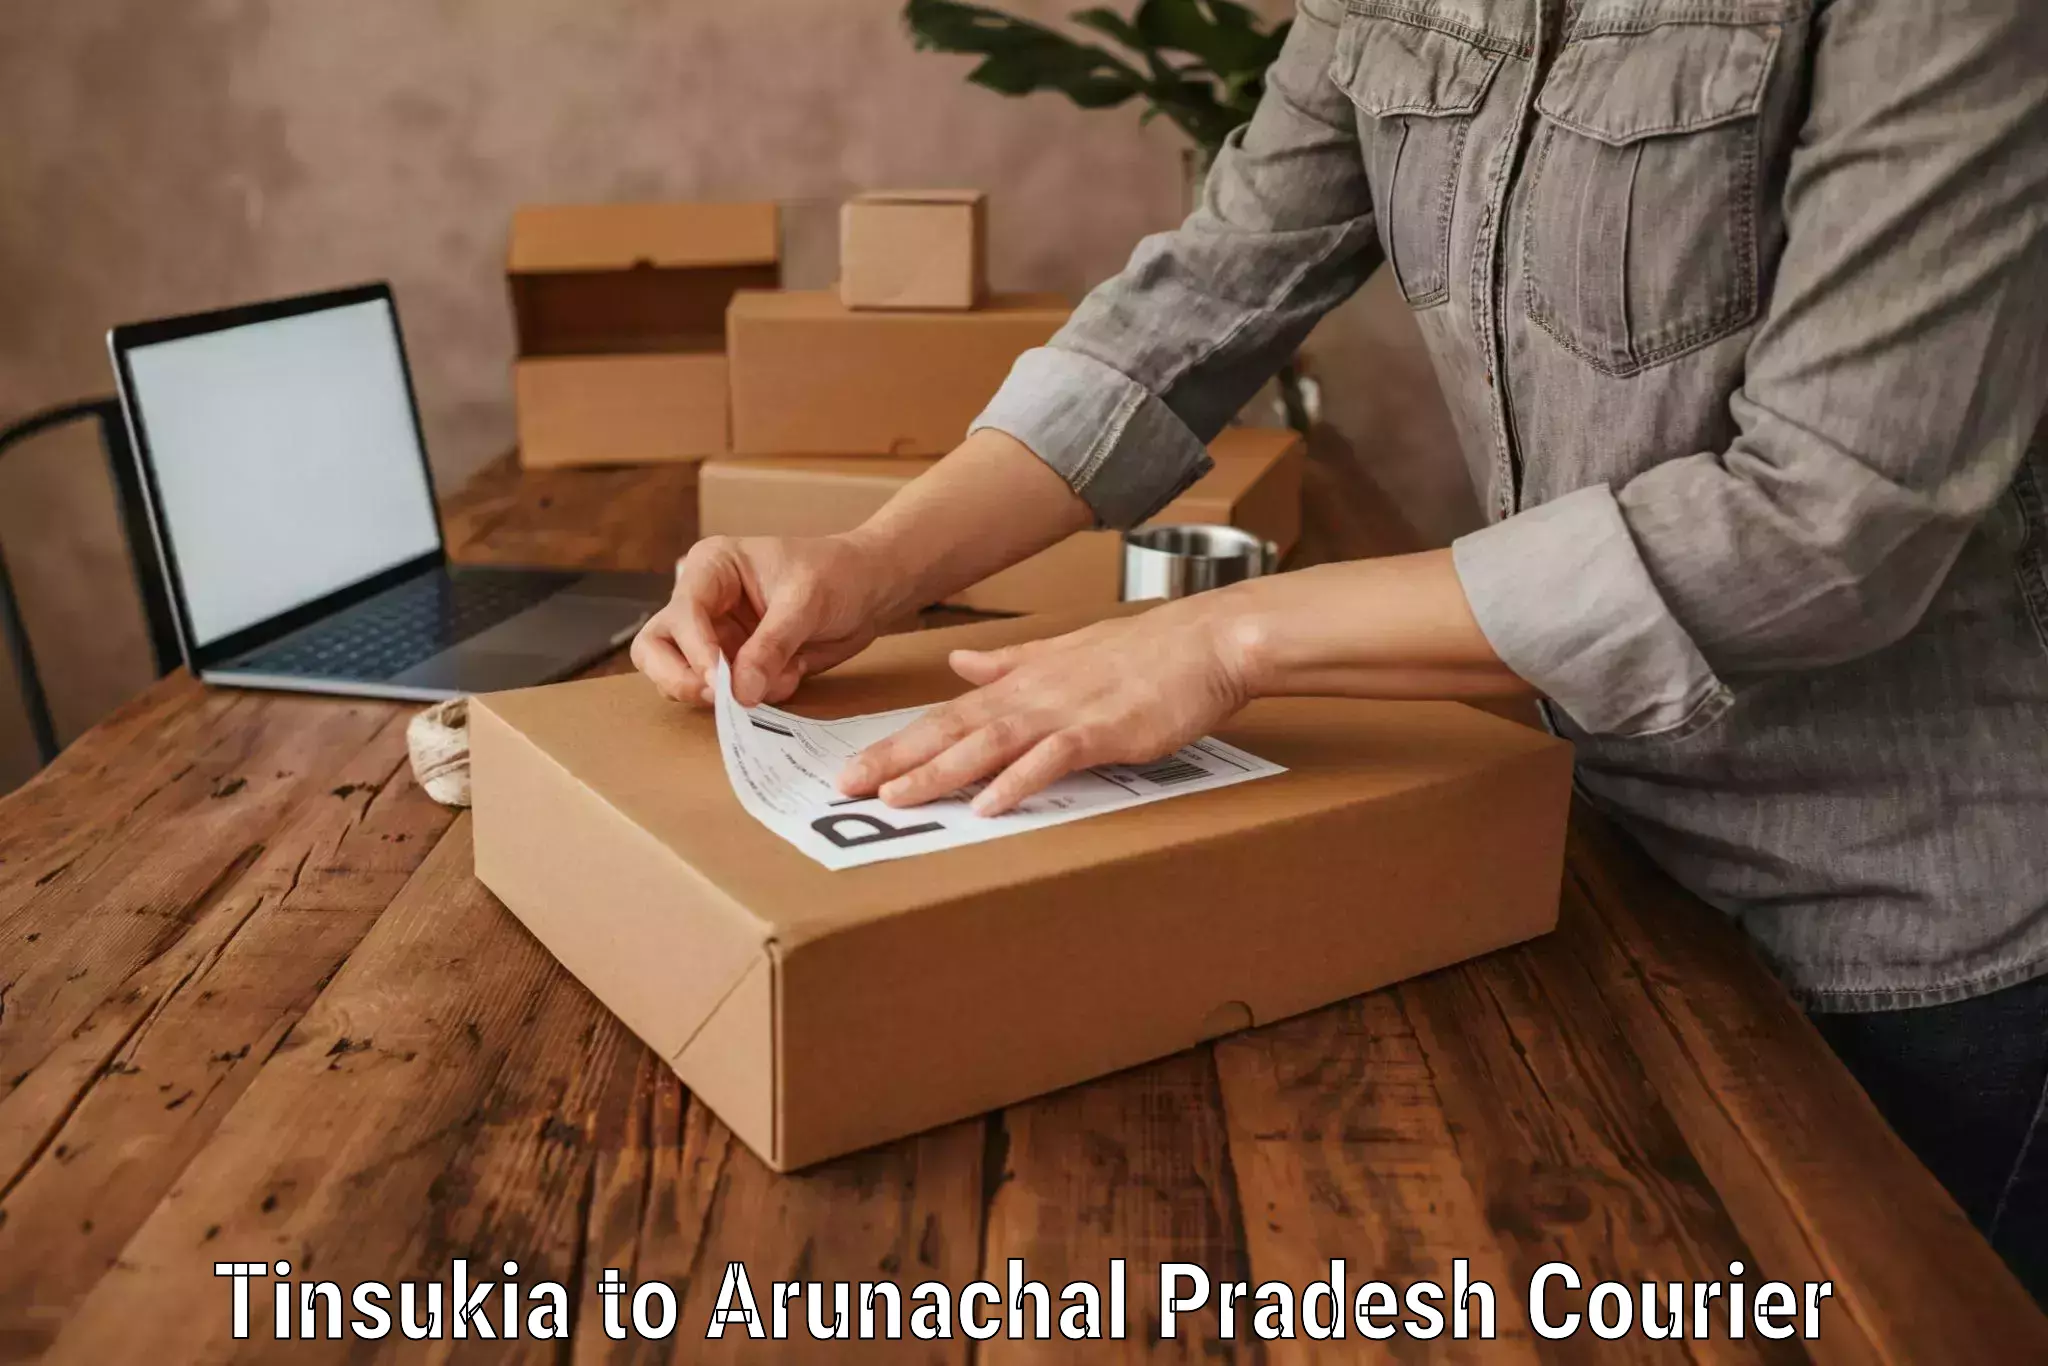 Luggage delivery providers Tinsukia to Arunachal Pradesh